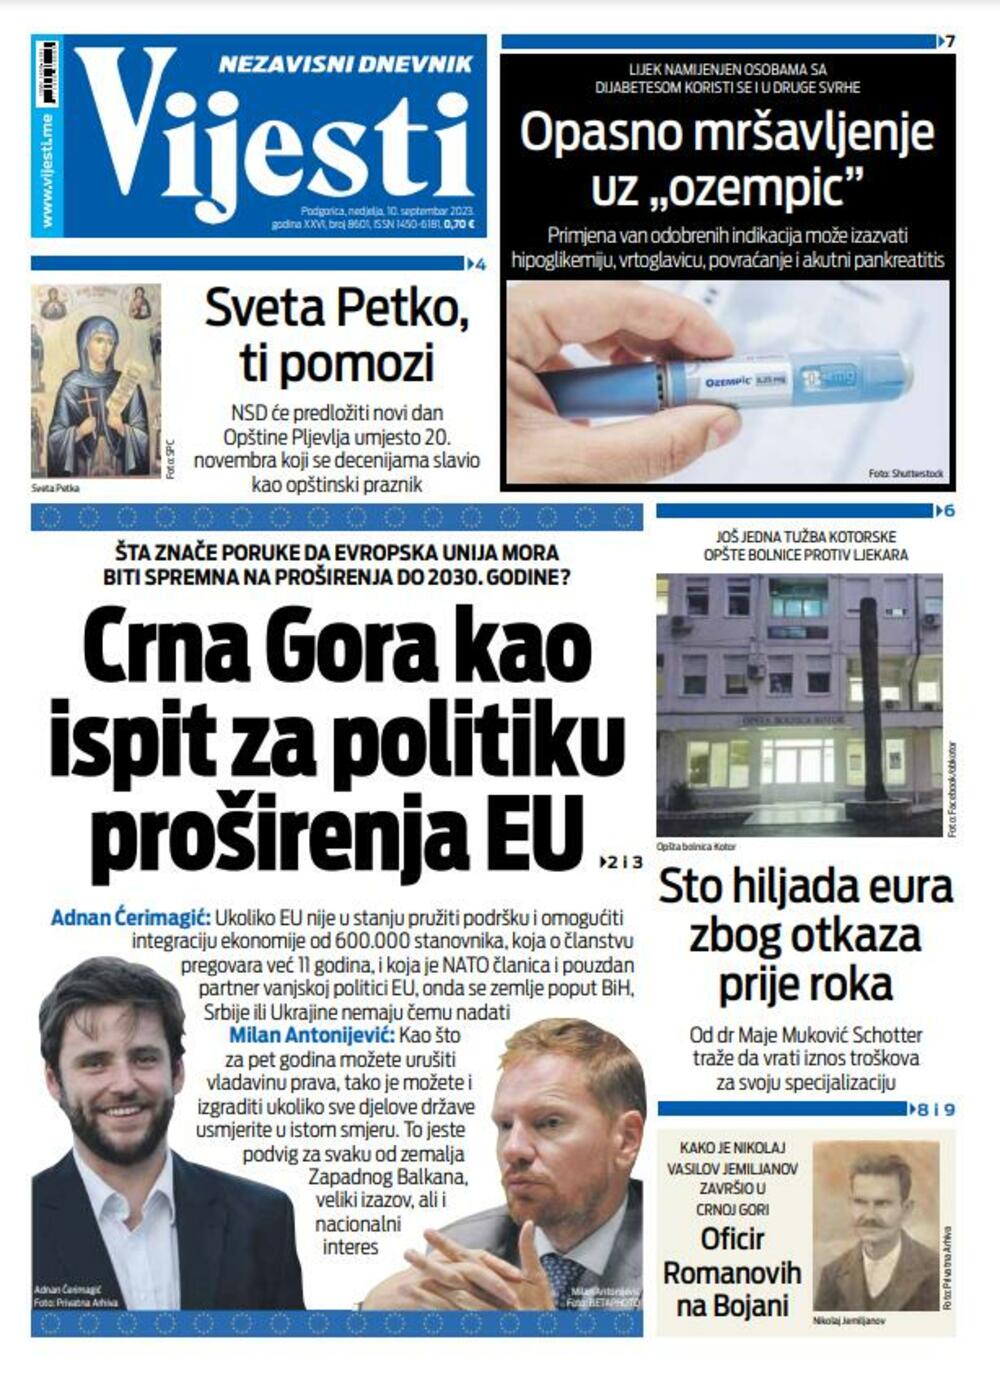 Naslovna strana "Vijesti" za 10. septembar 2023., Foto: Vijesti